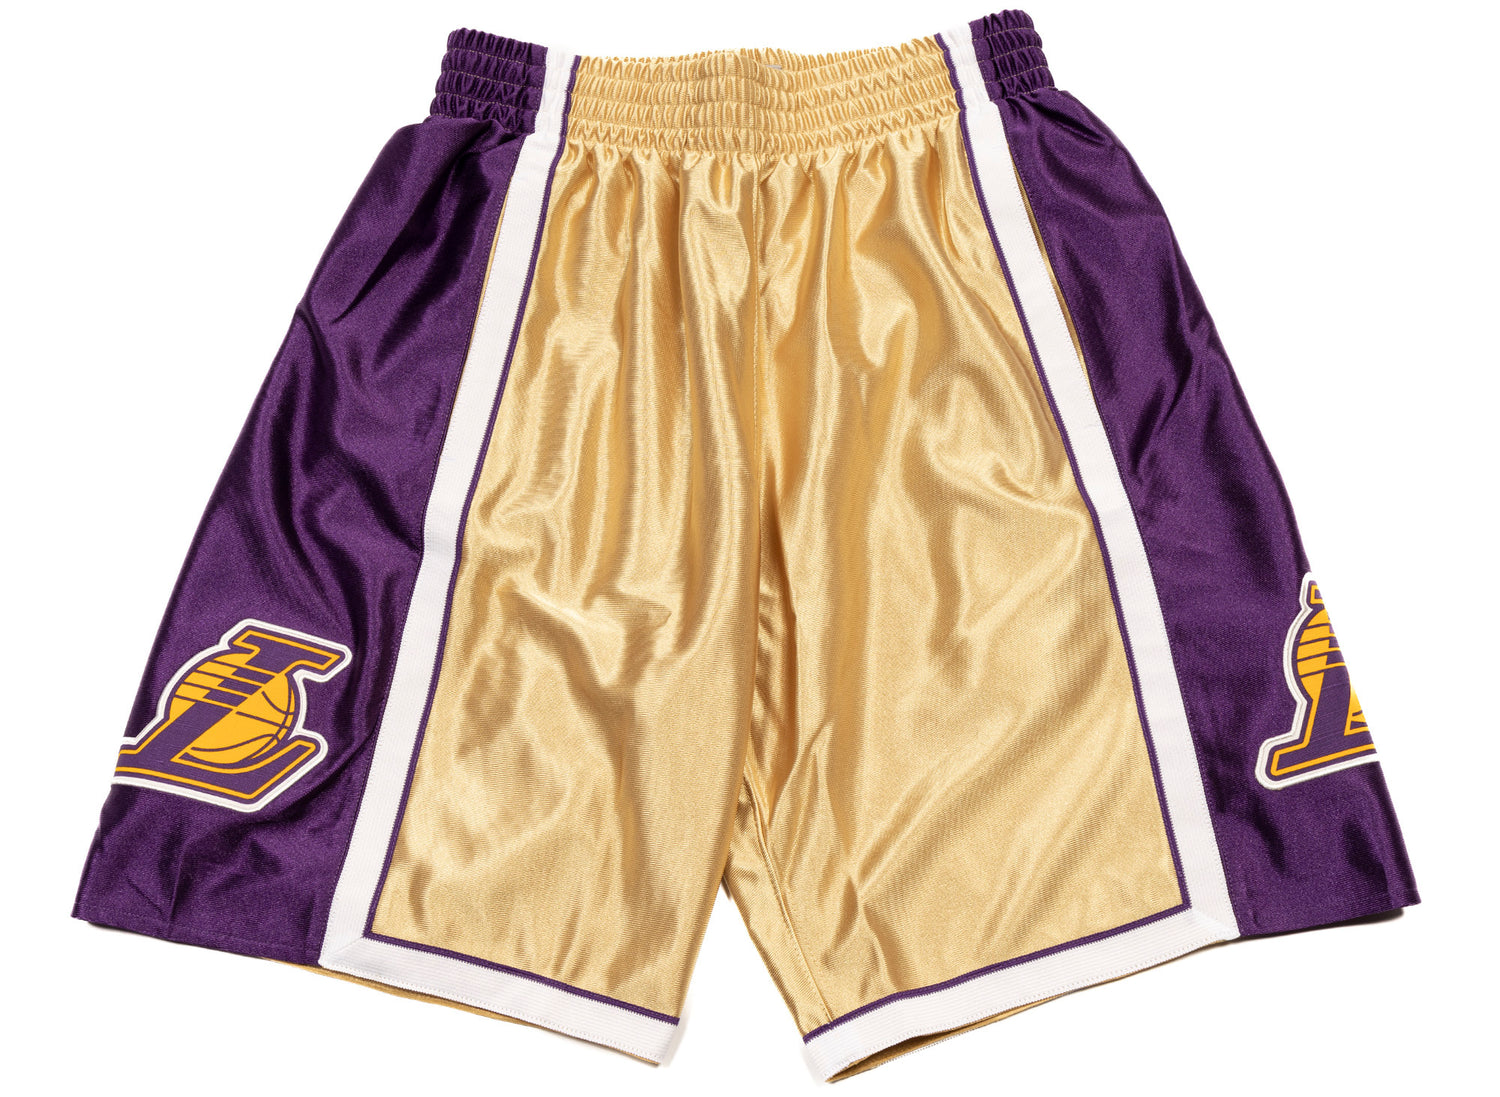 Mitchell & Ness NBA Swingman Shorts Lakers 09 Light Gold MD